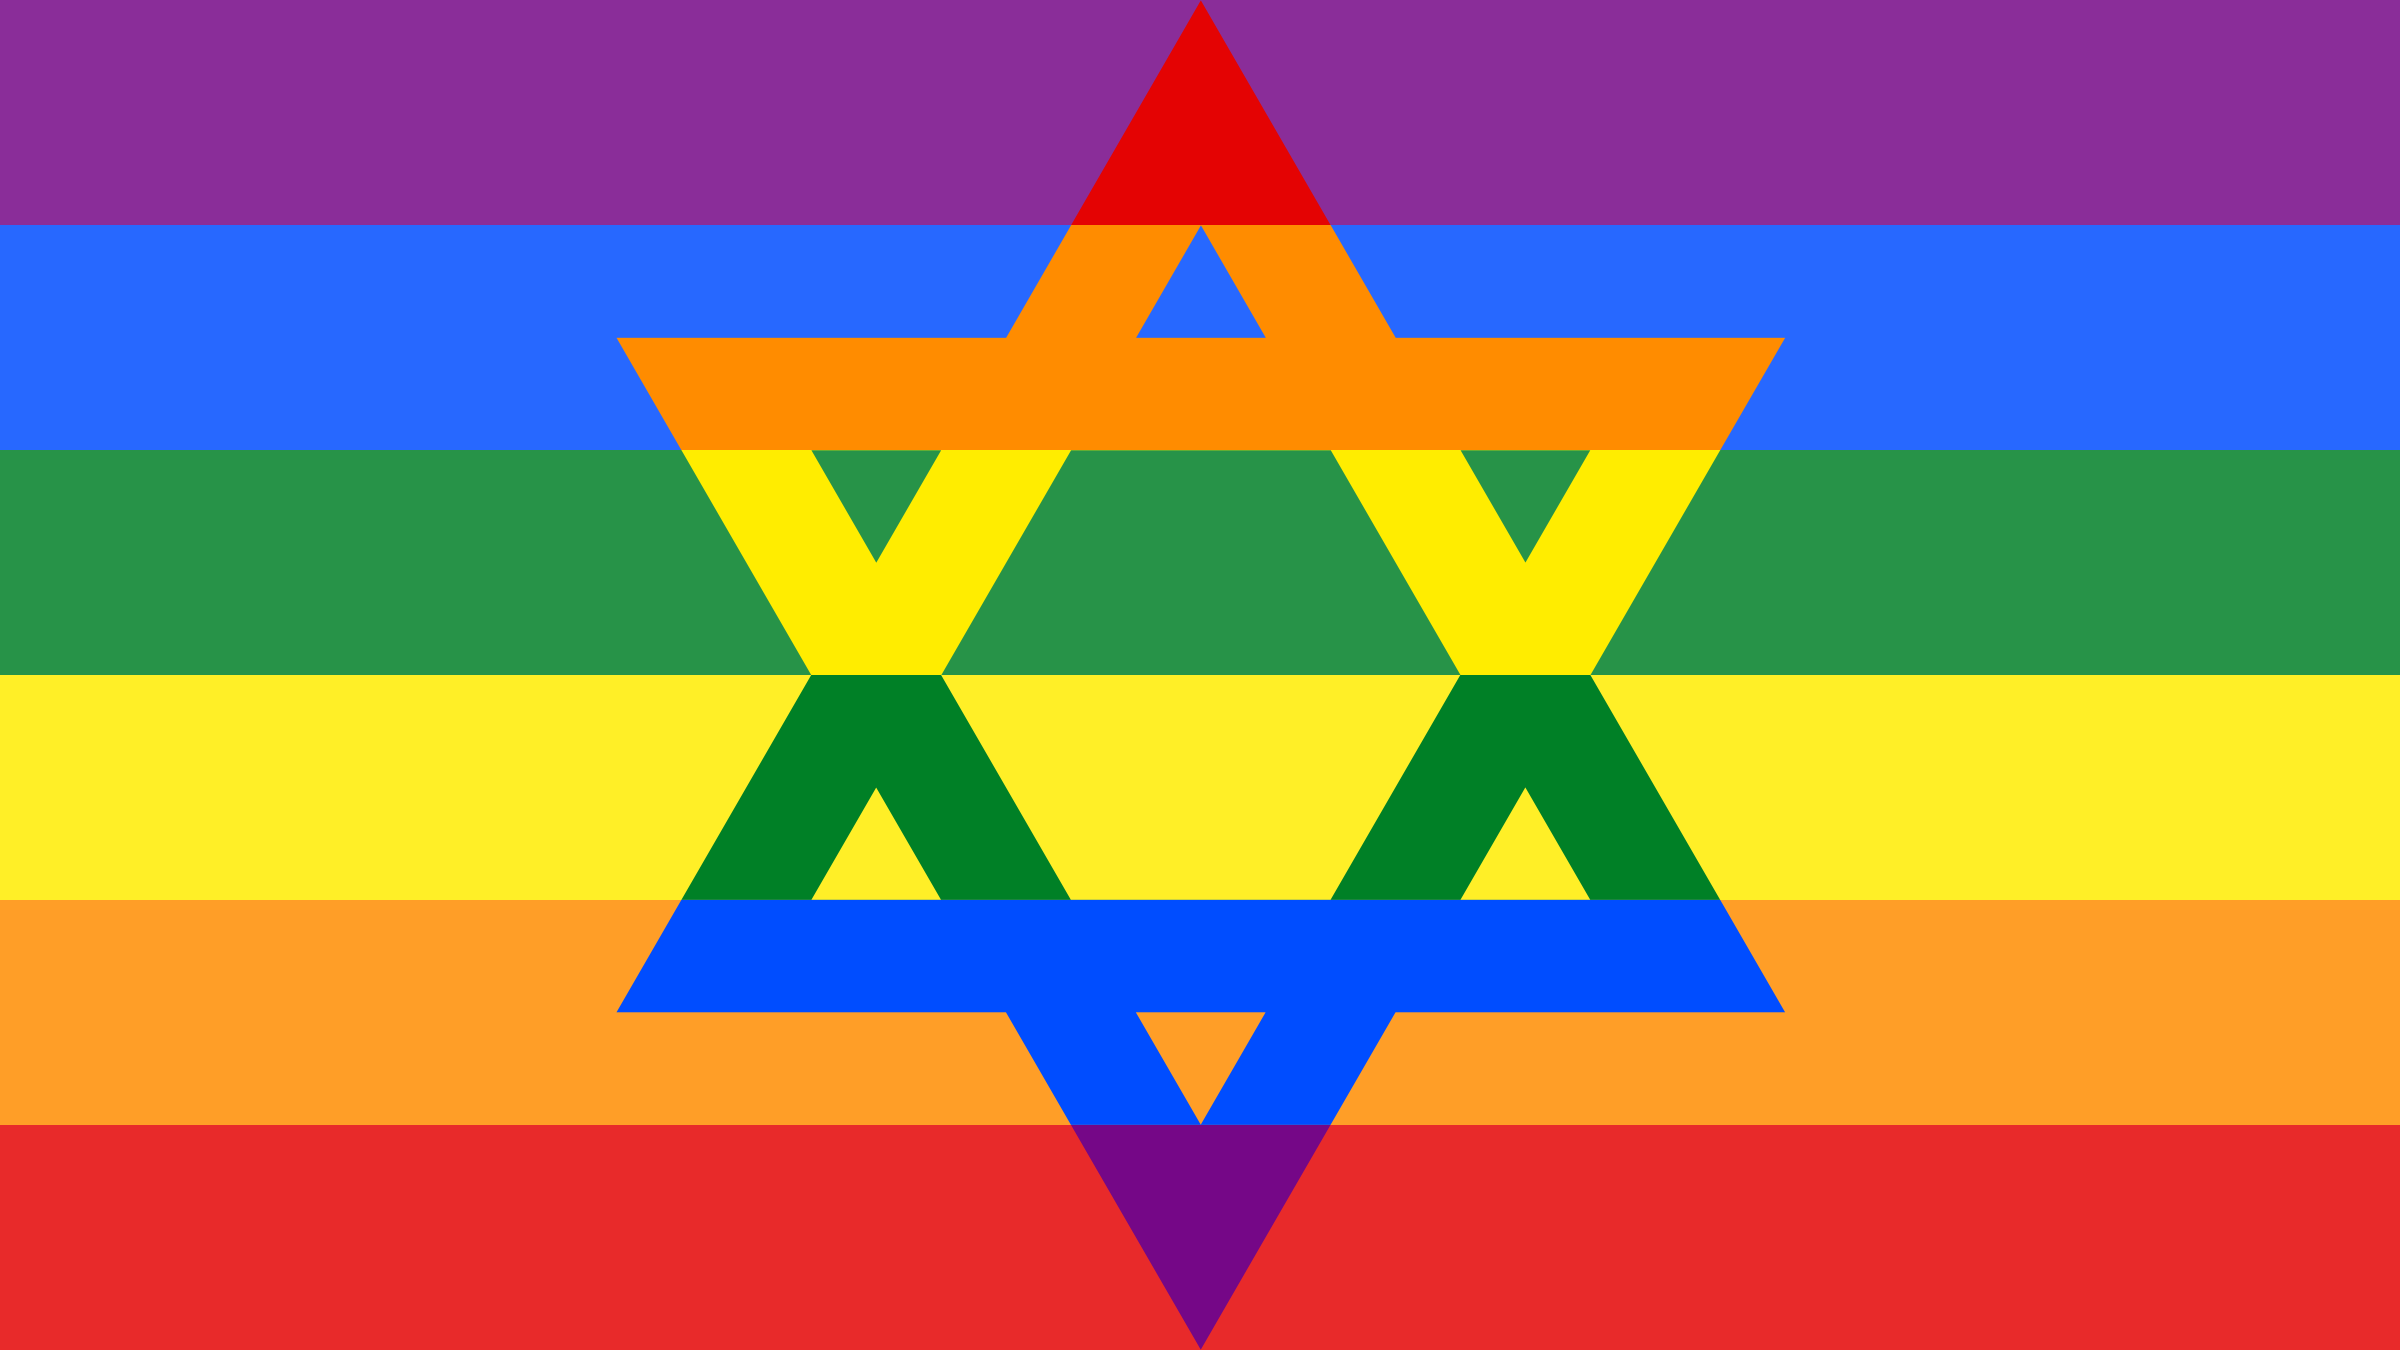 Starofdavidgay - ' - Jewish Gay Pride Flag (2400x1350)